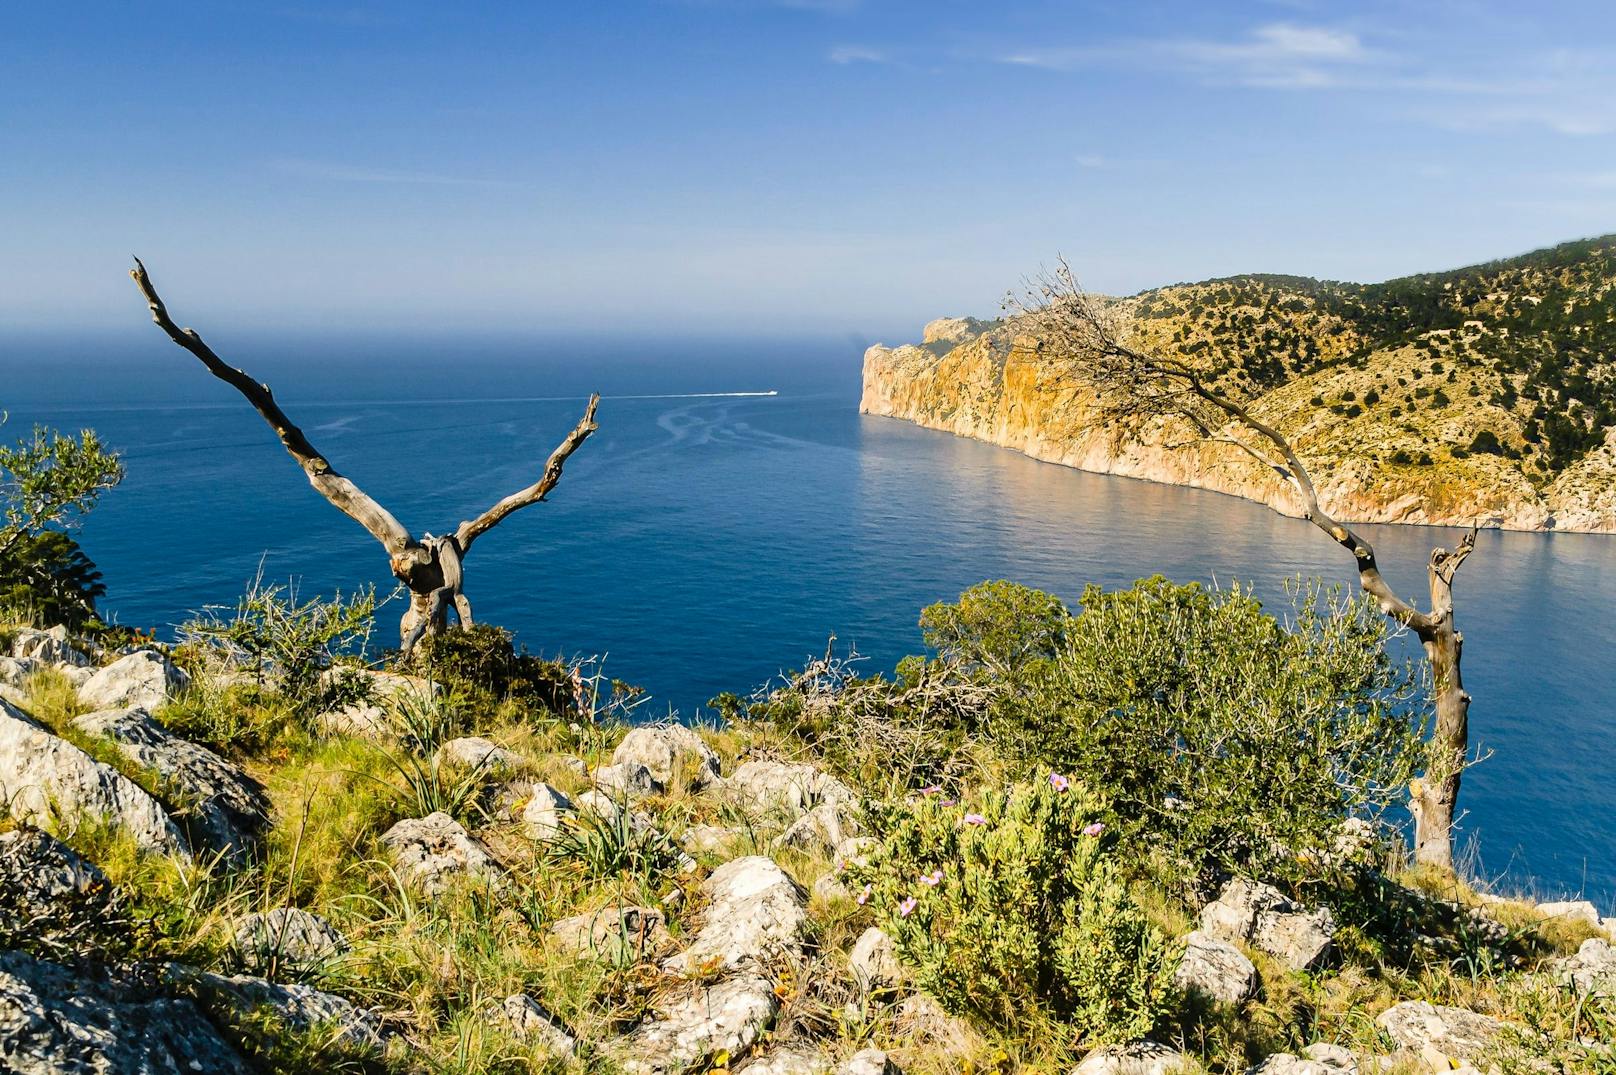 Die&nbsp; Wildnis von Mallorca ist immer eine Reise wert. Kombinieren kann man den Ausflug mit einem Lunch im Campino.&nbsp;